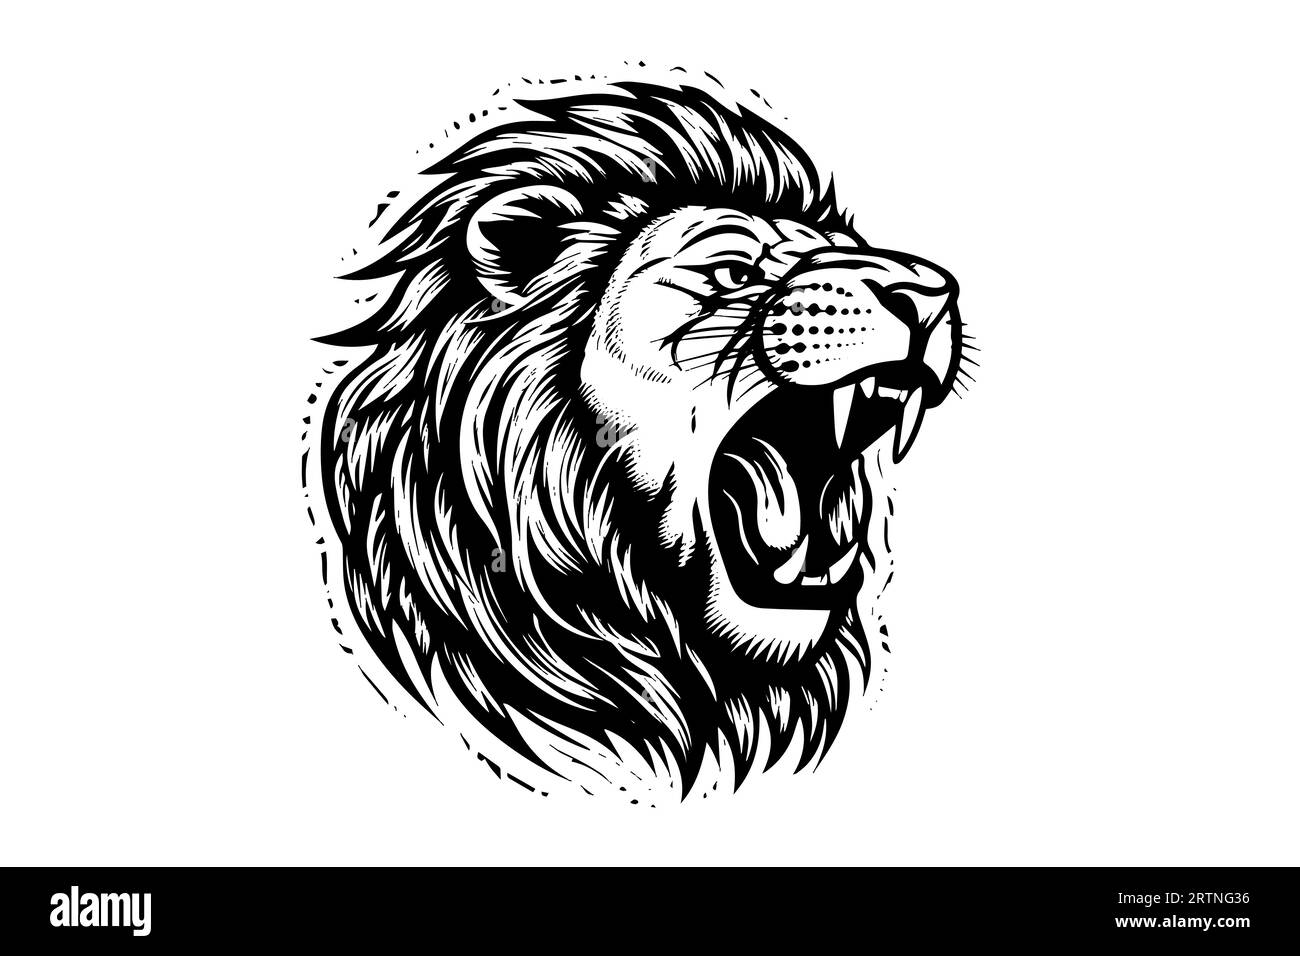 Dessin de portrait de tête de growl de lion dessin à la main illustration vectorielle de style gravure. Illustration de Vecteur